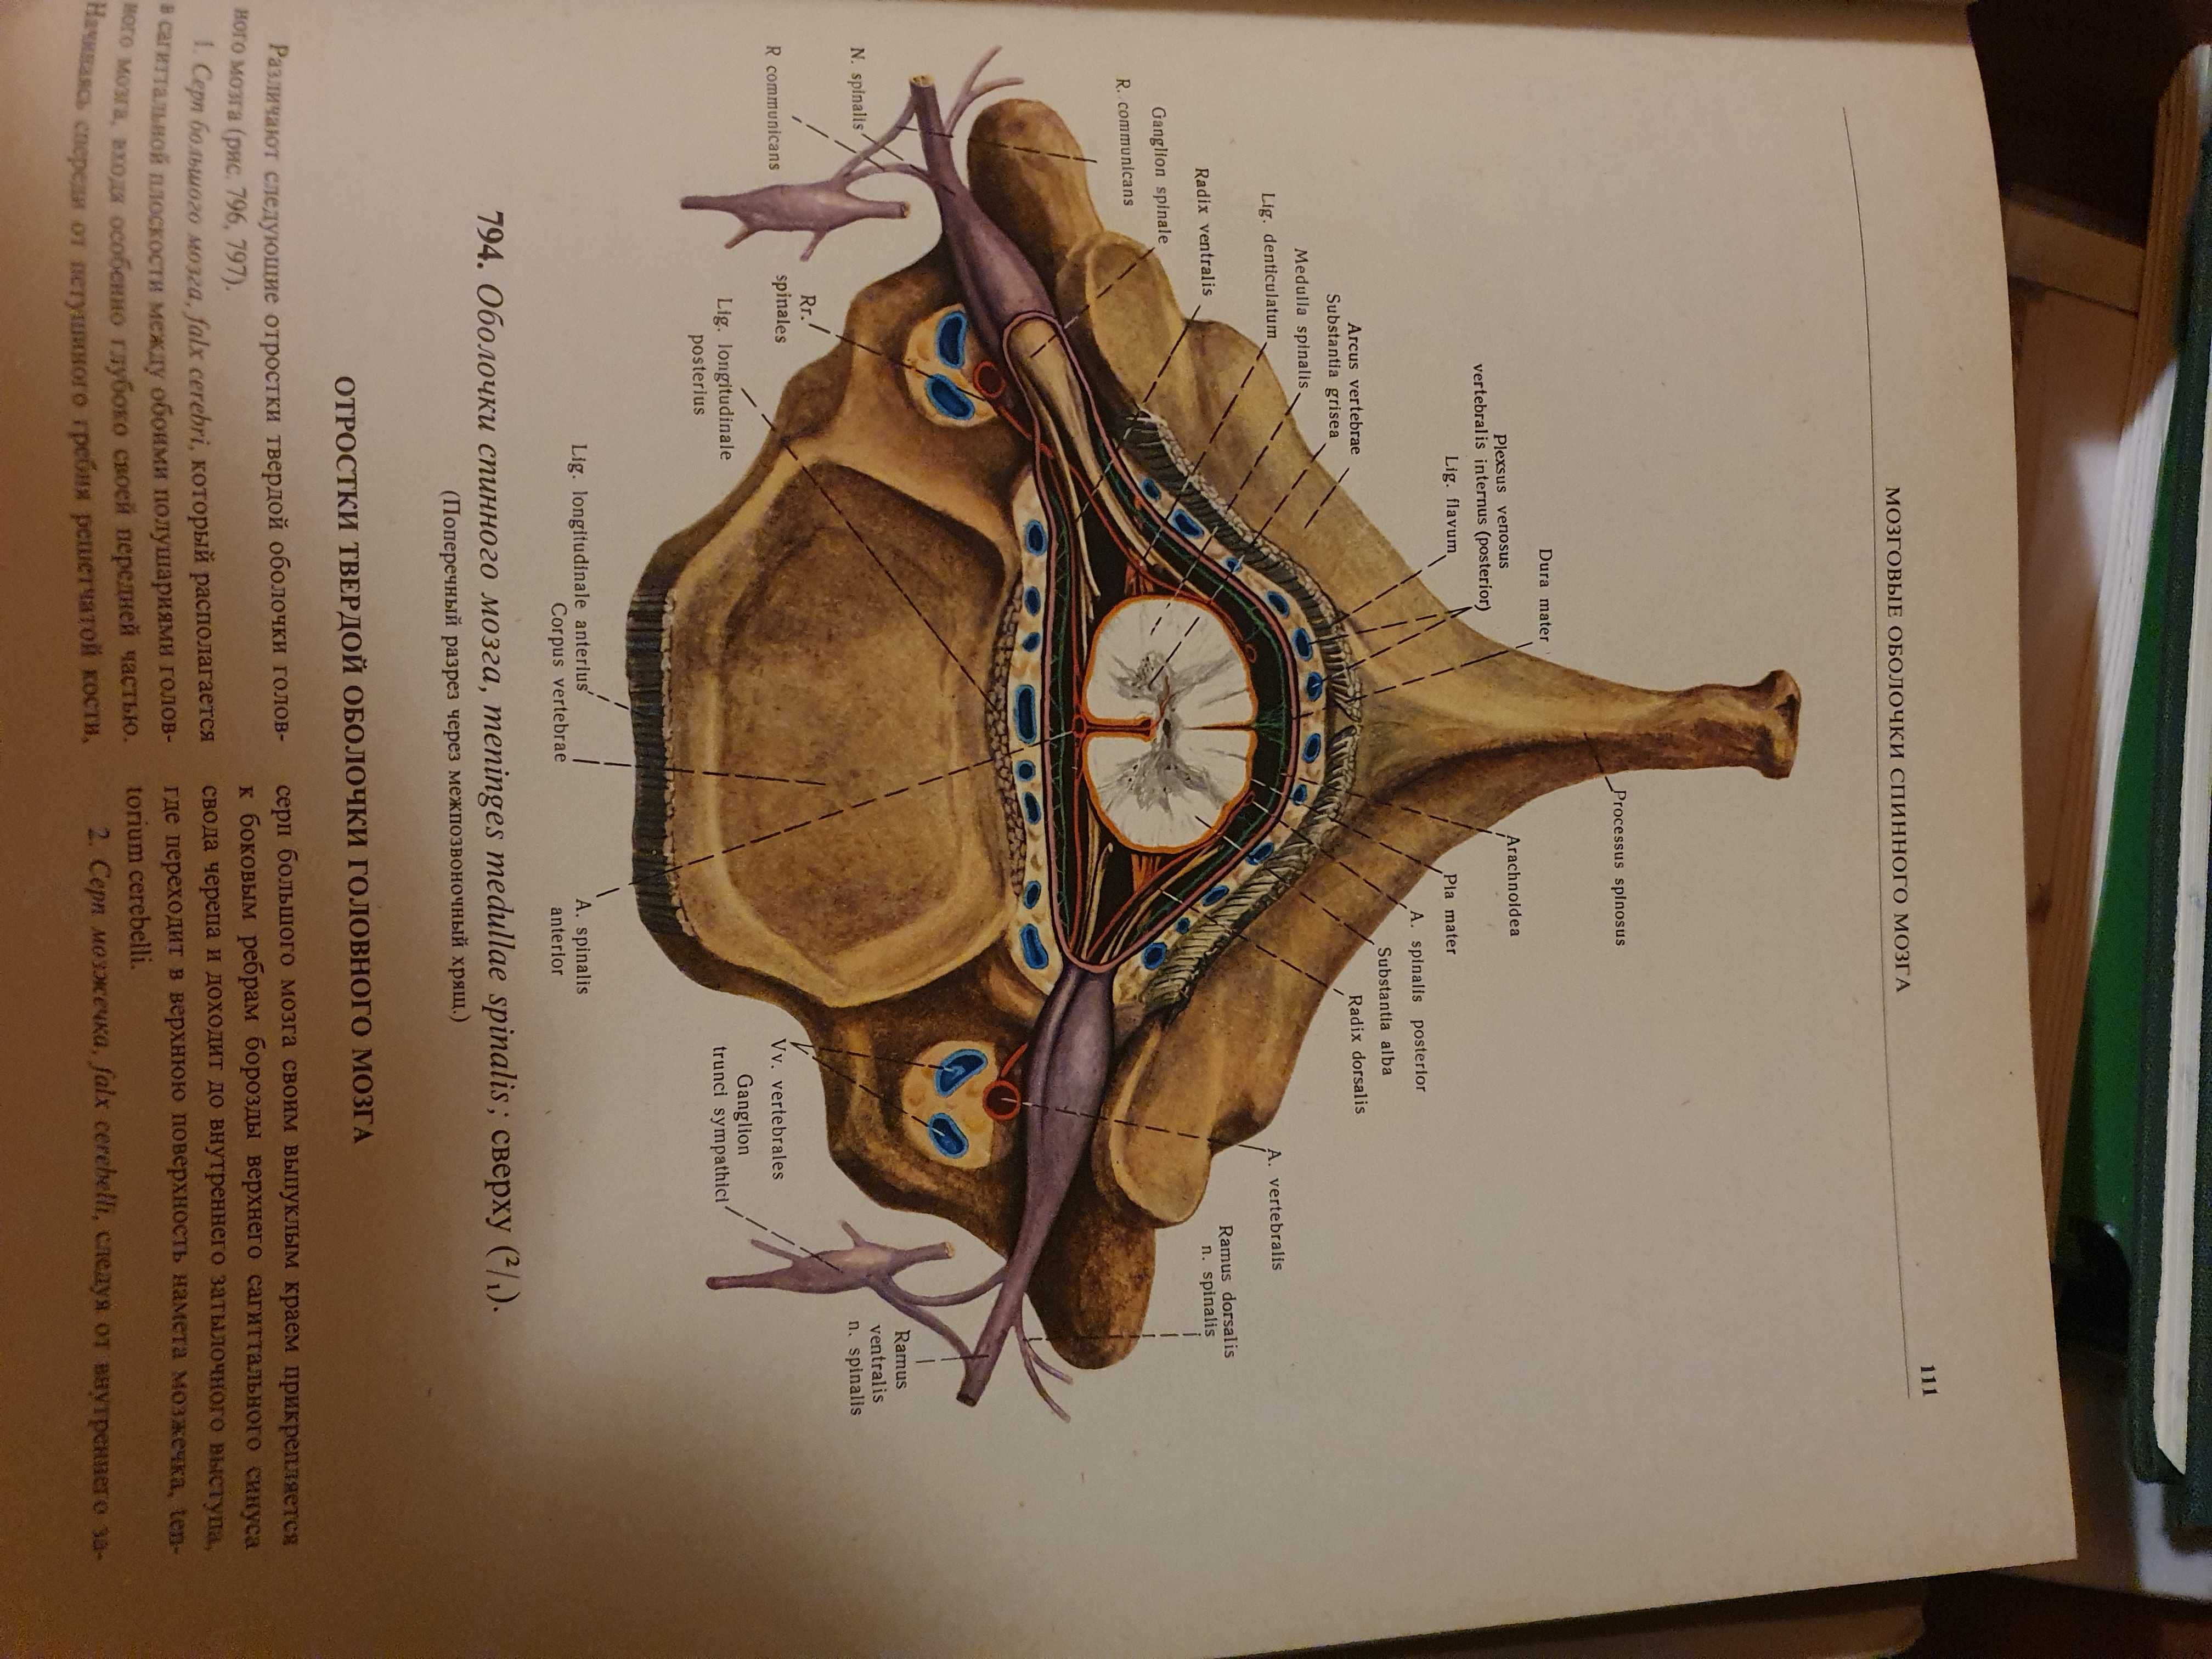 Атласи и учебник по анатомия за студенти по медицина